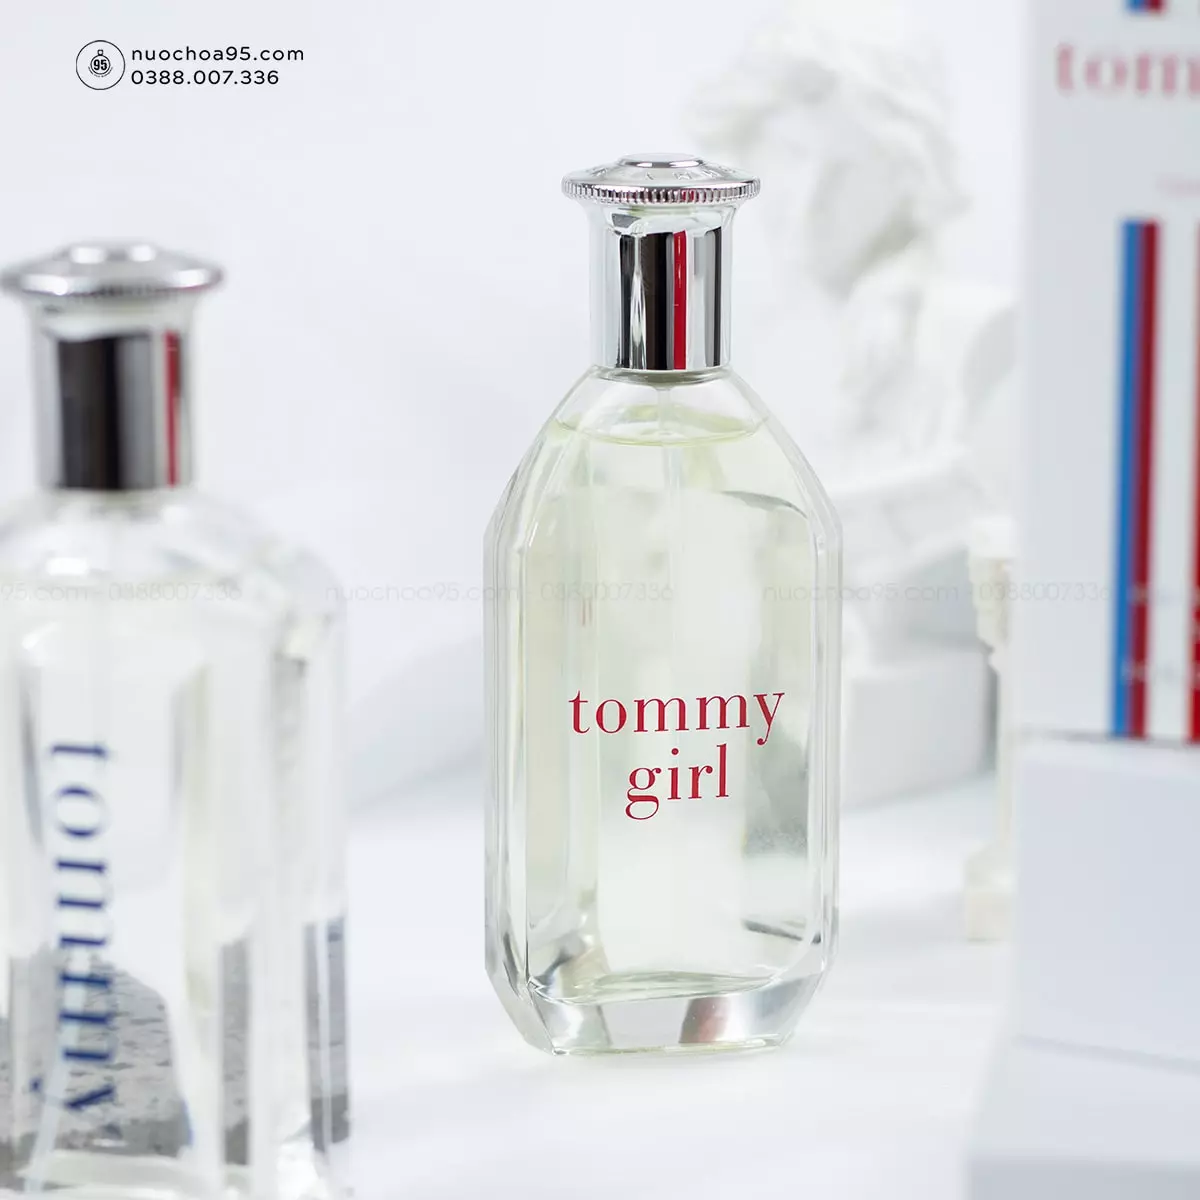 Nước hoa Tommy Girl - Ảnh 1